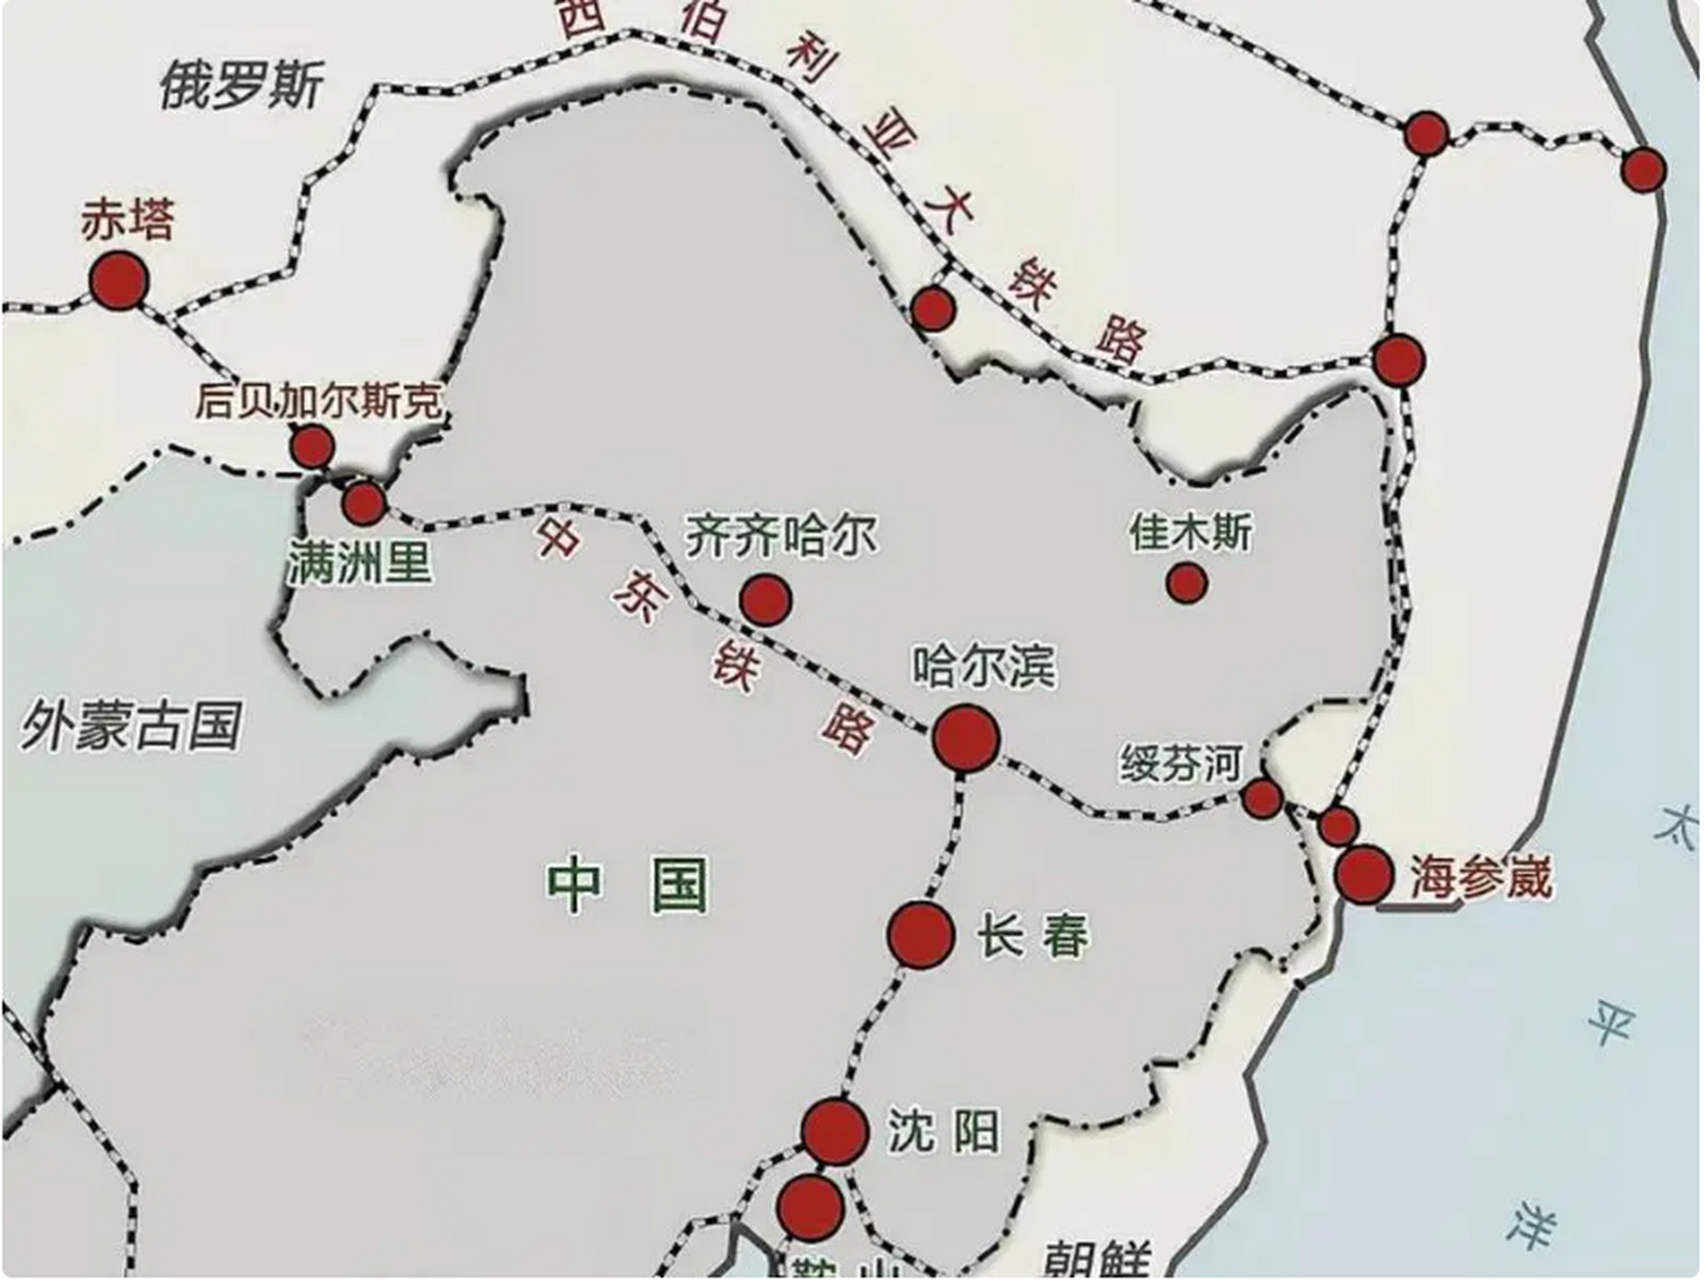 咱们翻开地图,就会发现,黑瞎子岛位于黑龙江和乌苏里江的交汇处,是